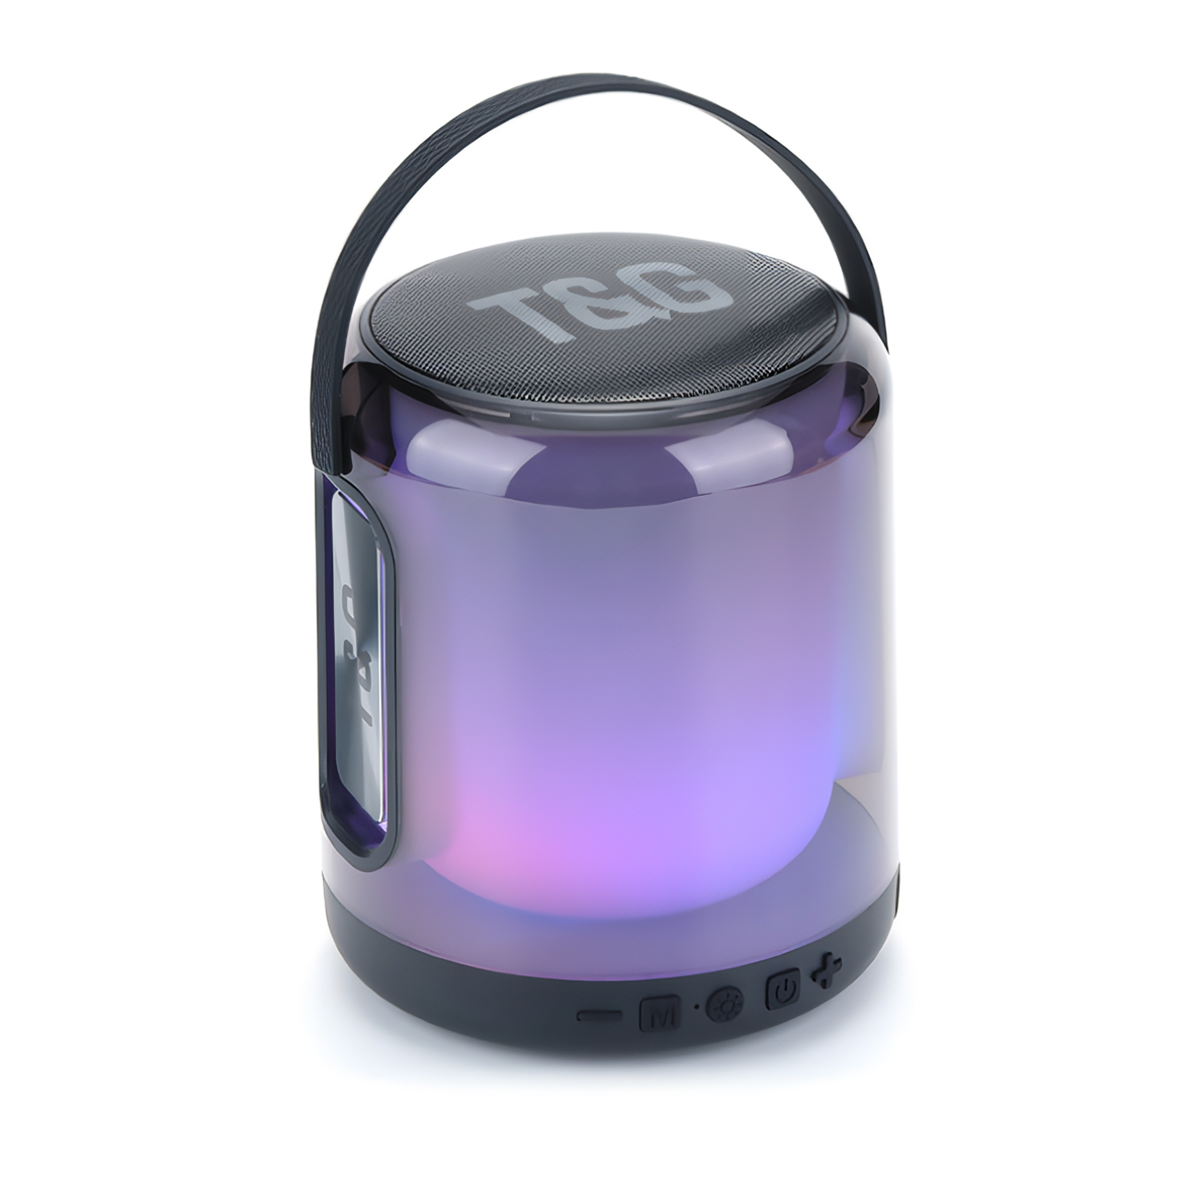 Altifalante Bluetooth Tg376 Rgb - Conexão Estável, Luz Led De 360 Graus, Reprodução Tws E Compacto. - multicolor - 